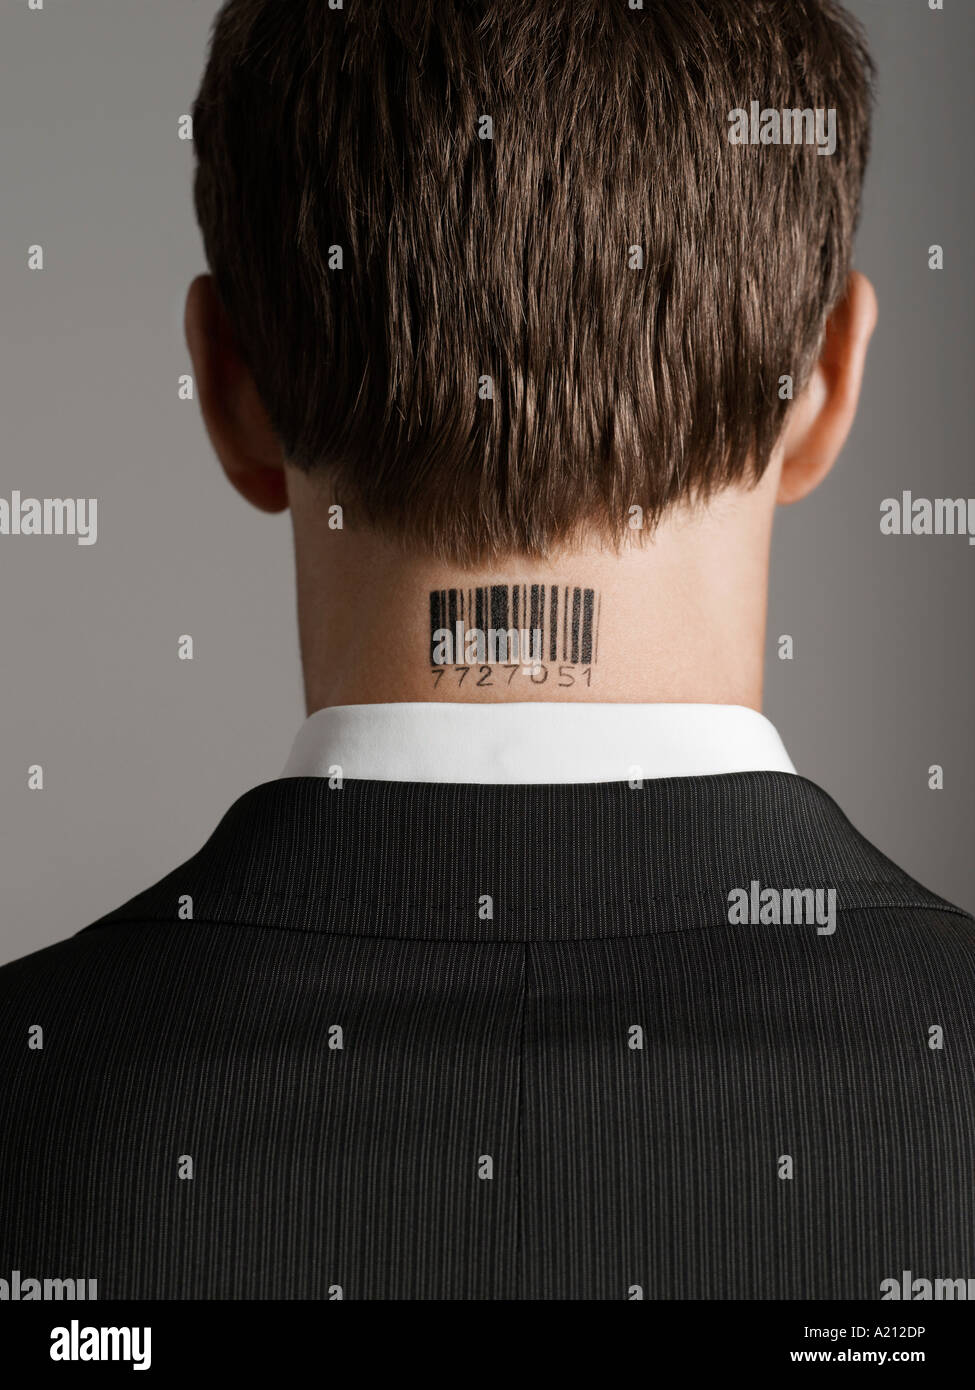 Jeune homme avec code barre tatouage sur son cou, vue arrière Banque D'Images